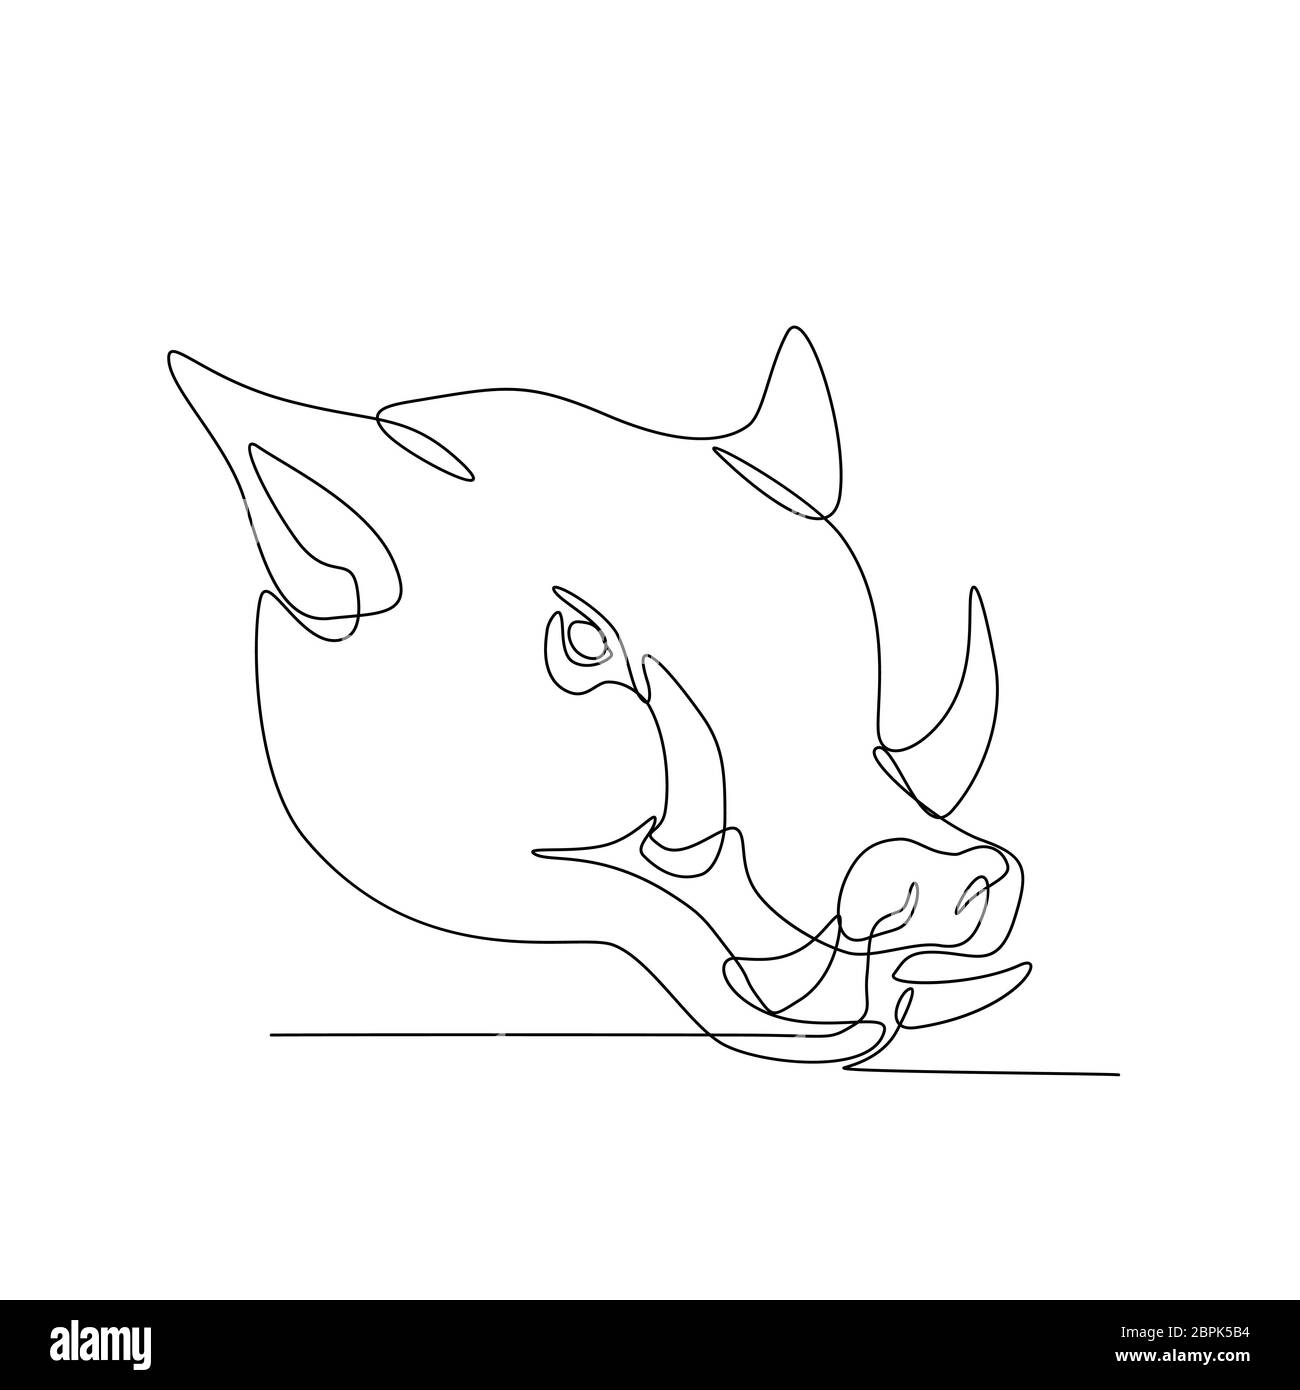 Linea continua illustrazione di un maiale selvatico, maiale, cinghiale o testa di razorback visto dal lato fatto in bianco e nero in stile monolinea. Foto Stock